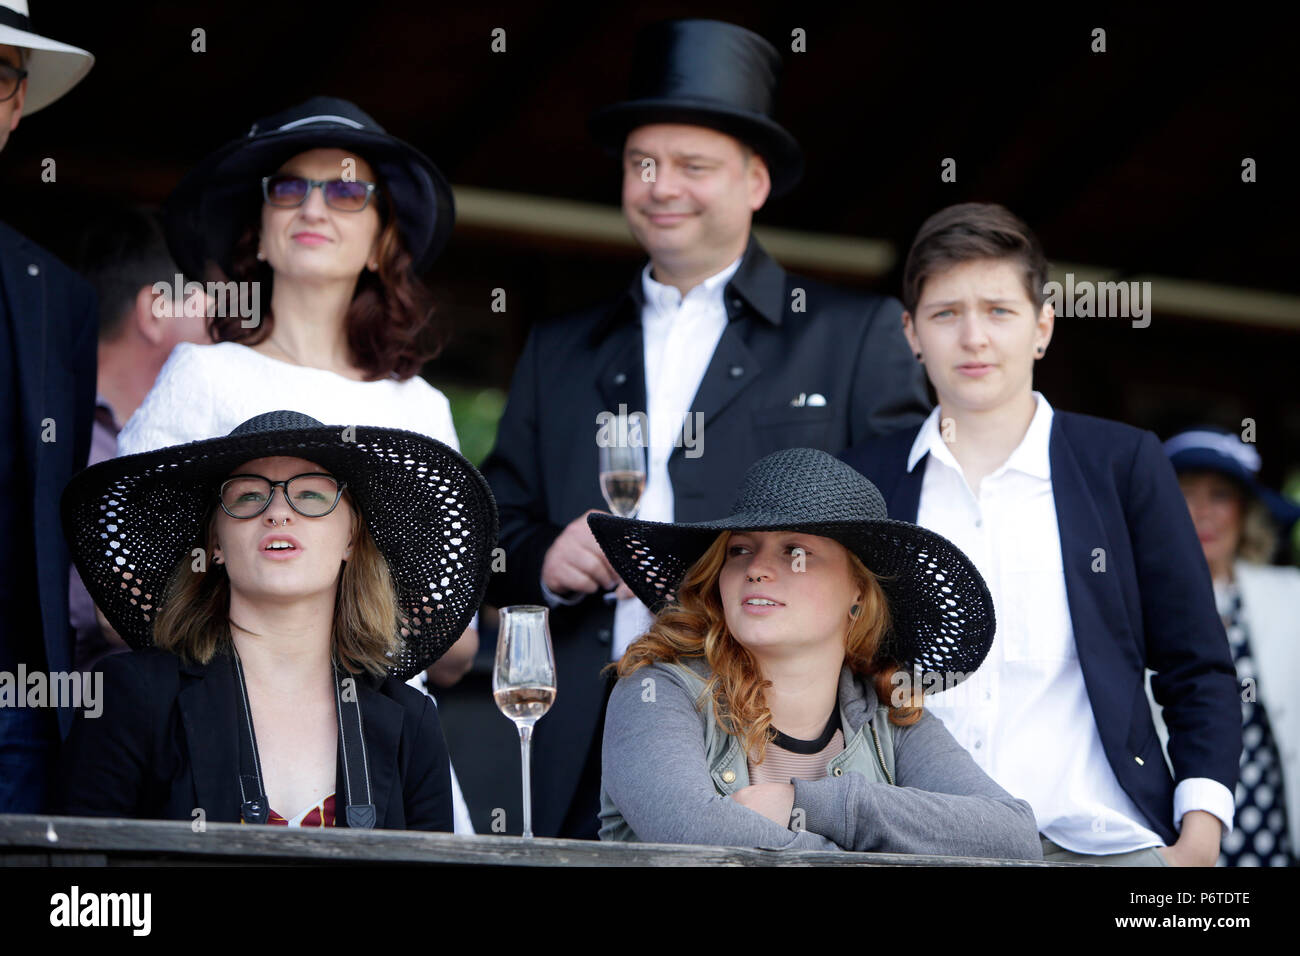 Dresde, élégamment vêtue racetrack visiteurs Banque D'Images